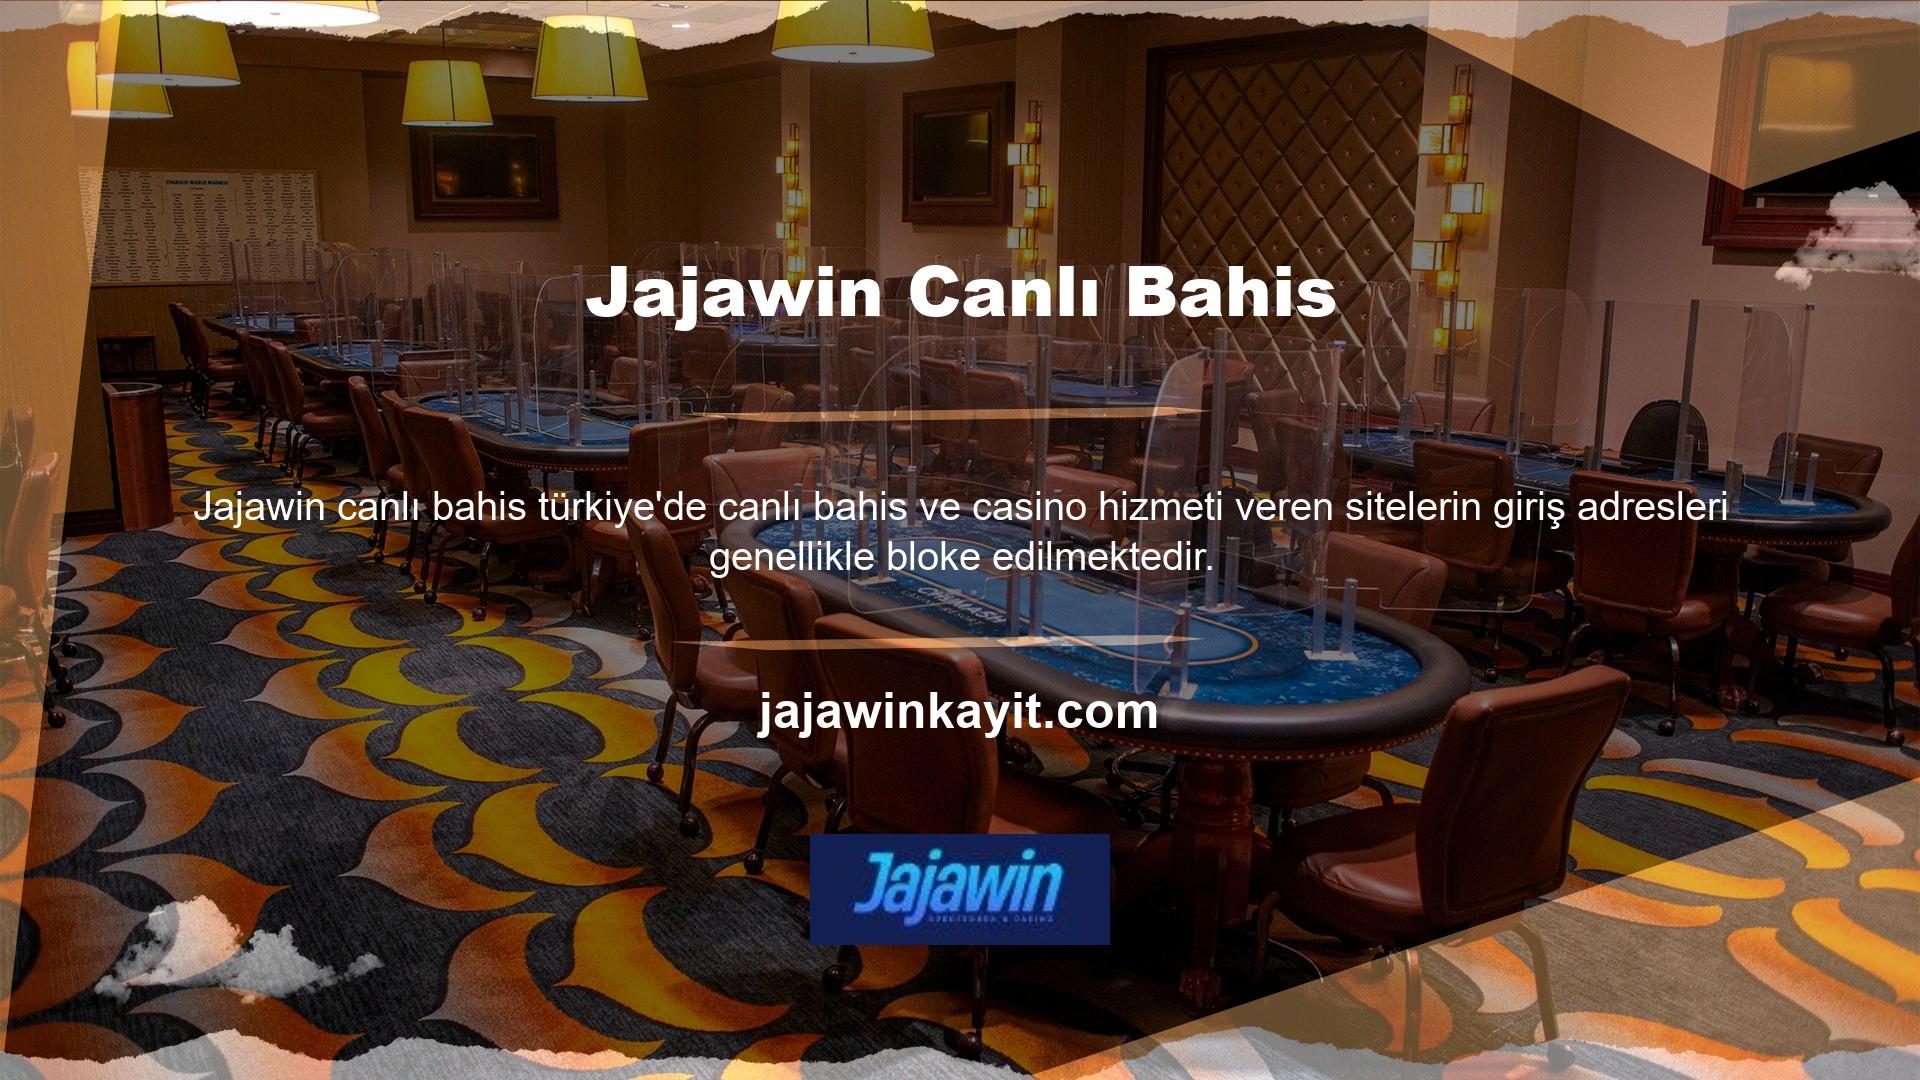 Jajawin web sitesinin son adresi de Jajawin